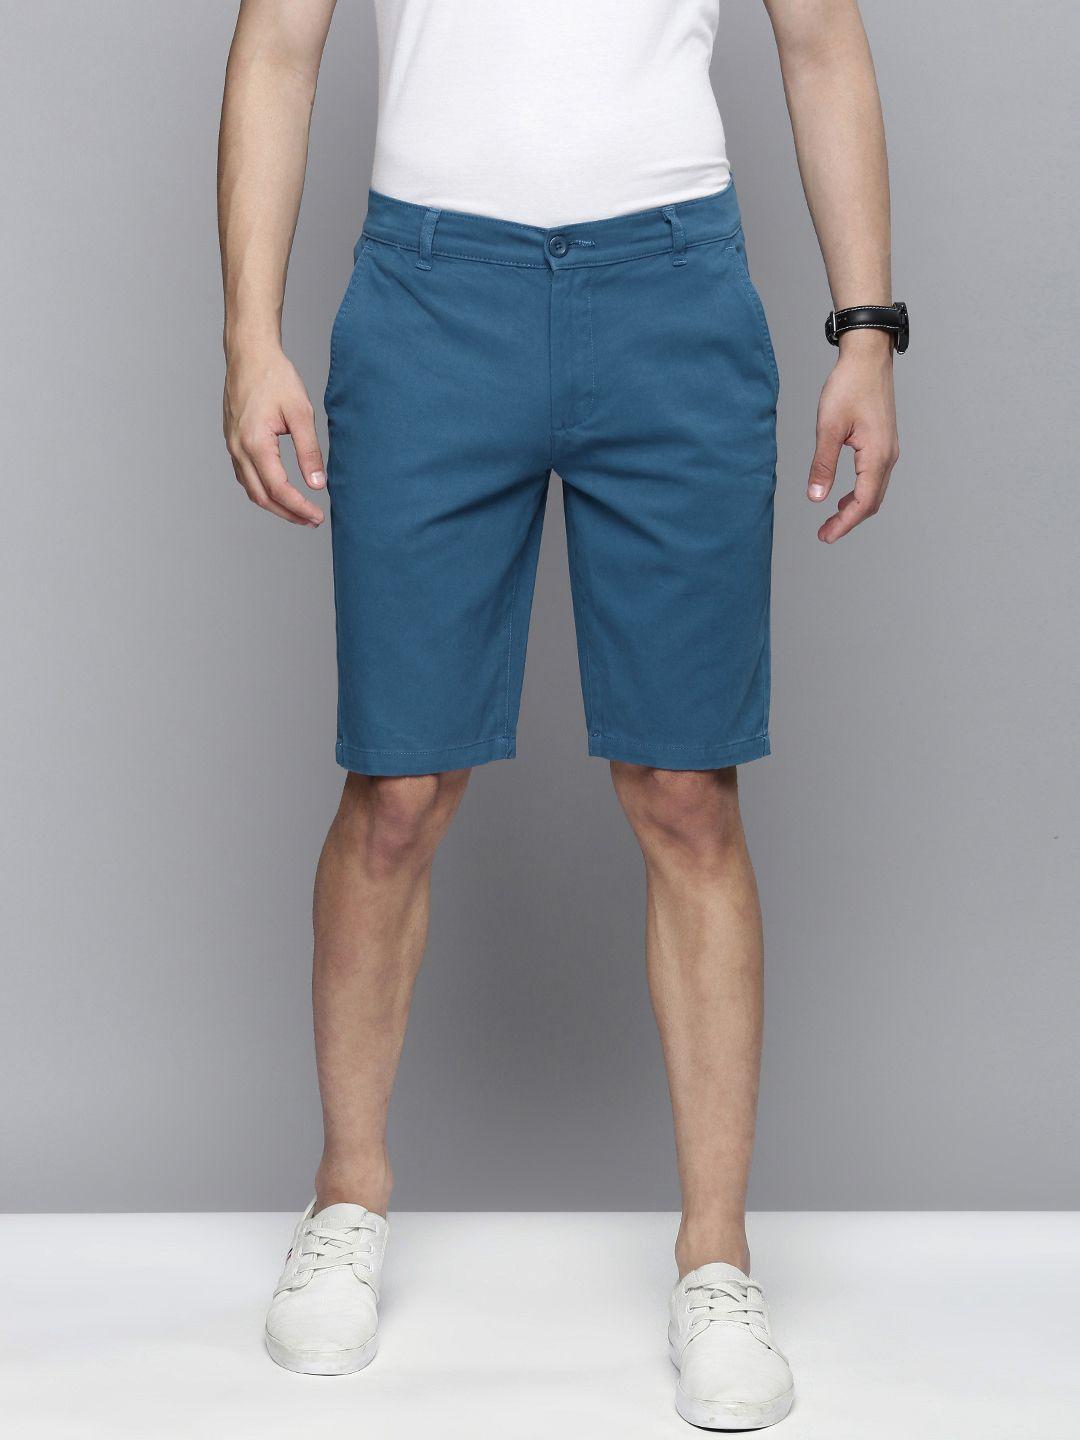 The Indian Garage Co Men Blue Slim Fit Regular Shorts